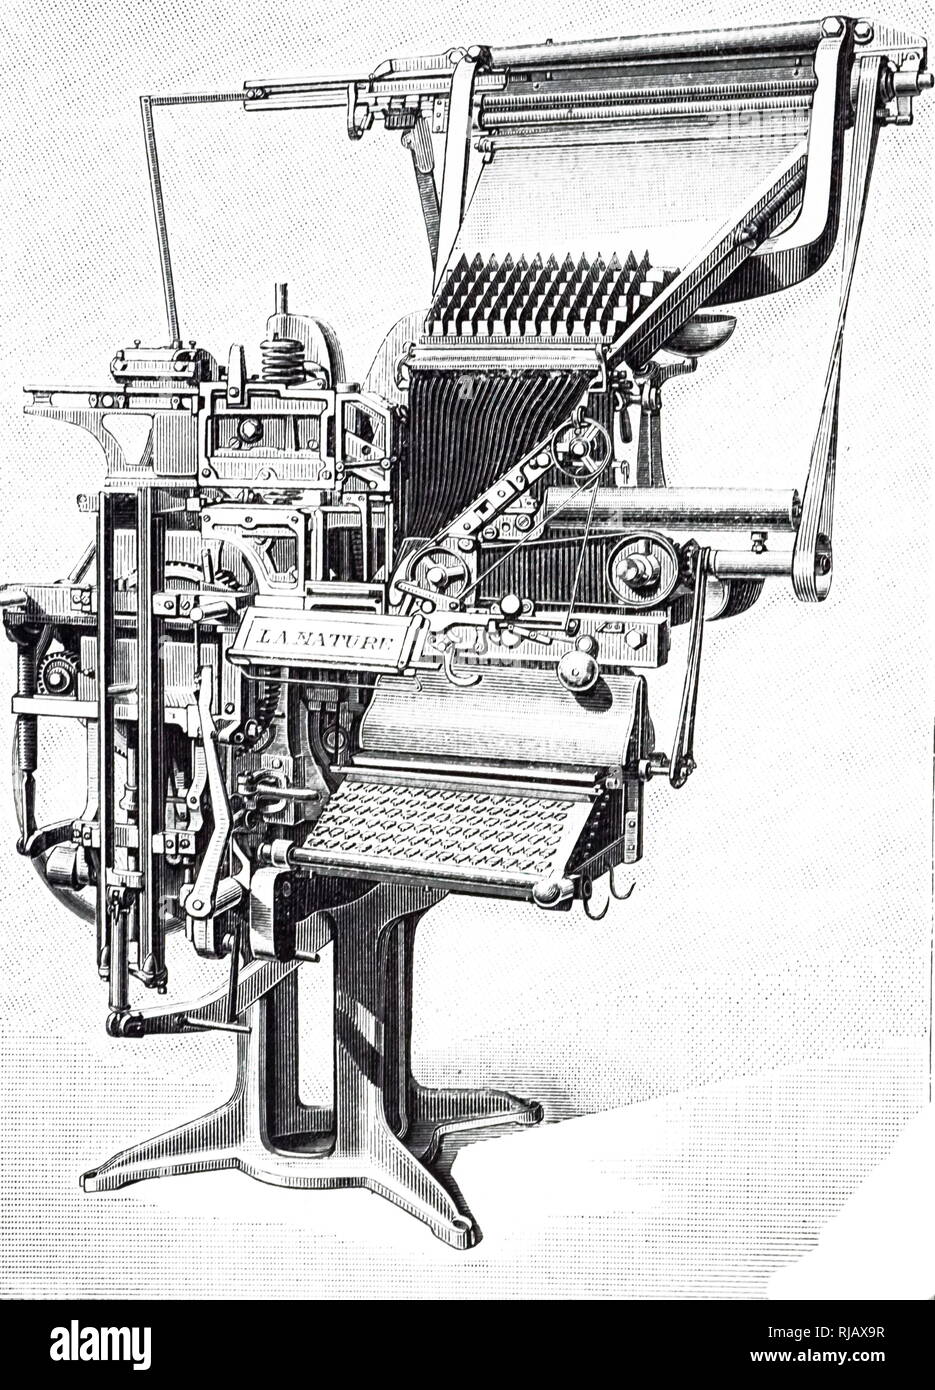 Ein kupferstich mit der Darstellung eines Linotype verfassen Maschine. Die durchschnittliche Rate war 4.000 Zeichen pro Stunde, aber mit einem erfahrenen Fahrer, könnte dies auf 7.500 steigen. Vom 19. Jahrhundert Stockfoto